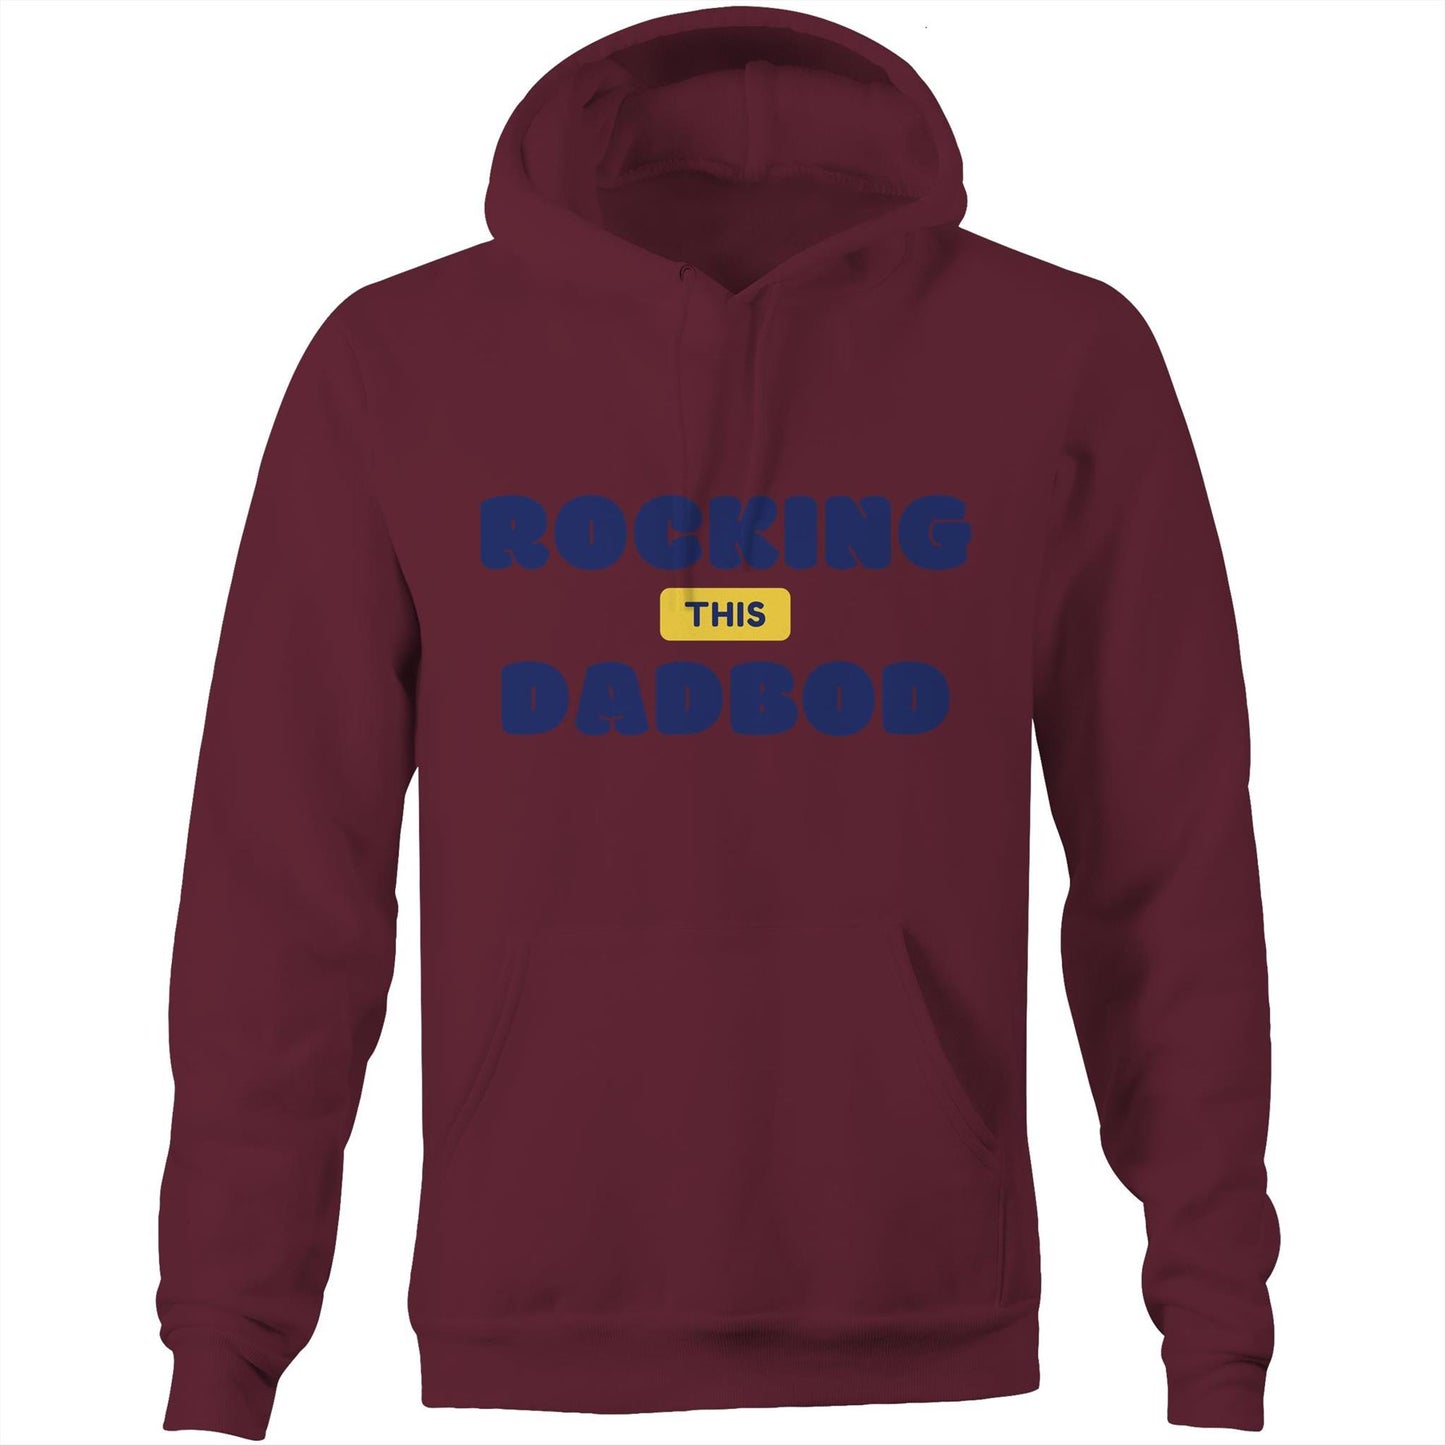 Rocking This DadBod - Pocket Hoodie Sweatshirt Burgundy Hoodie Dad